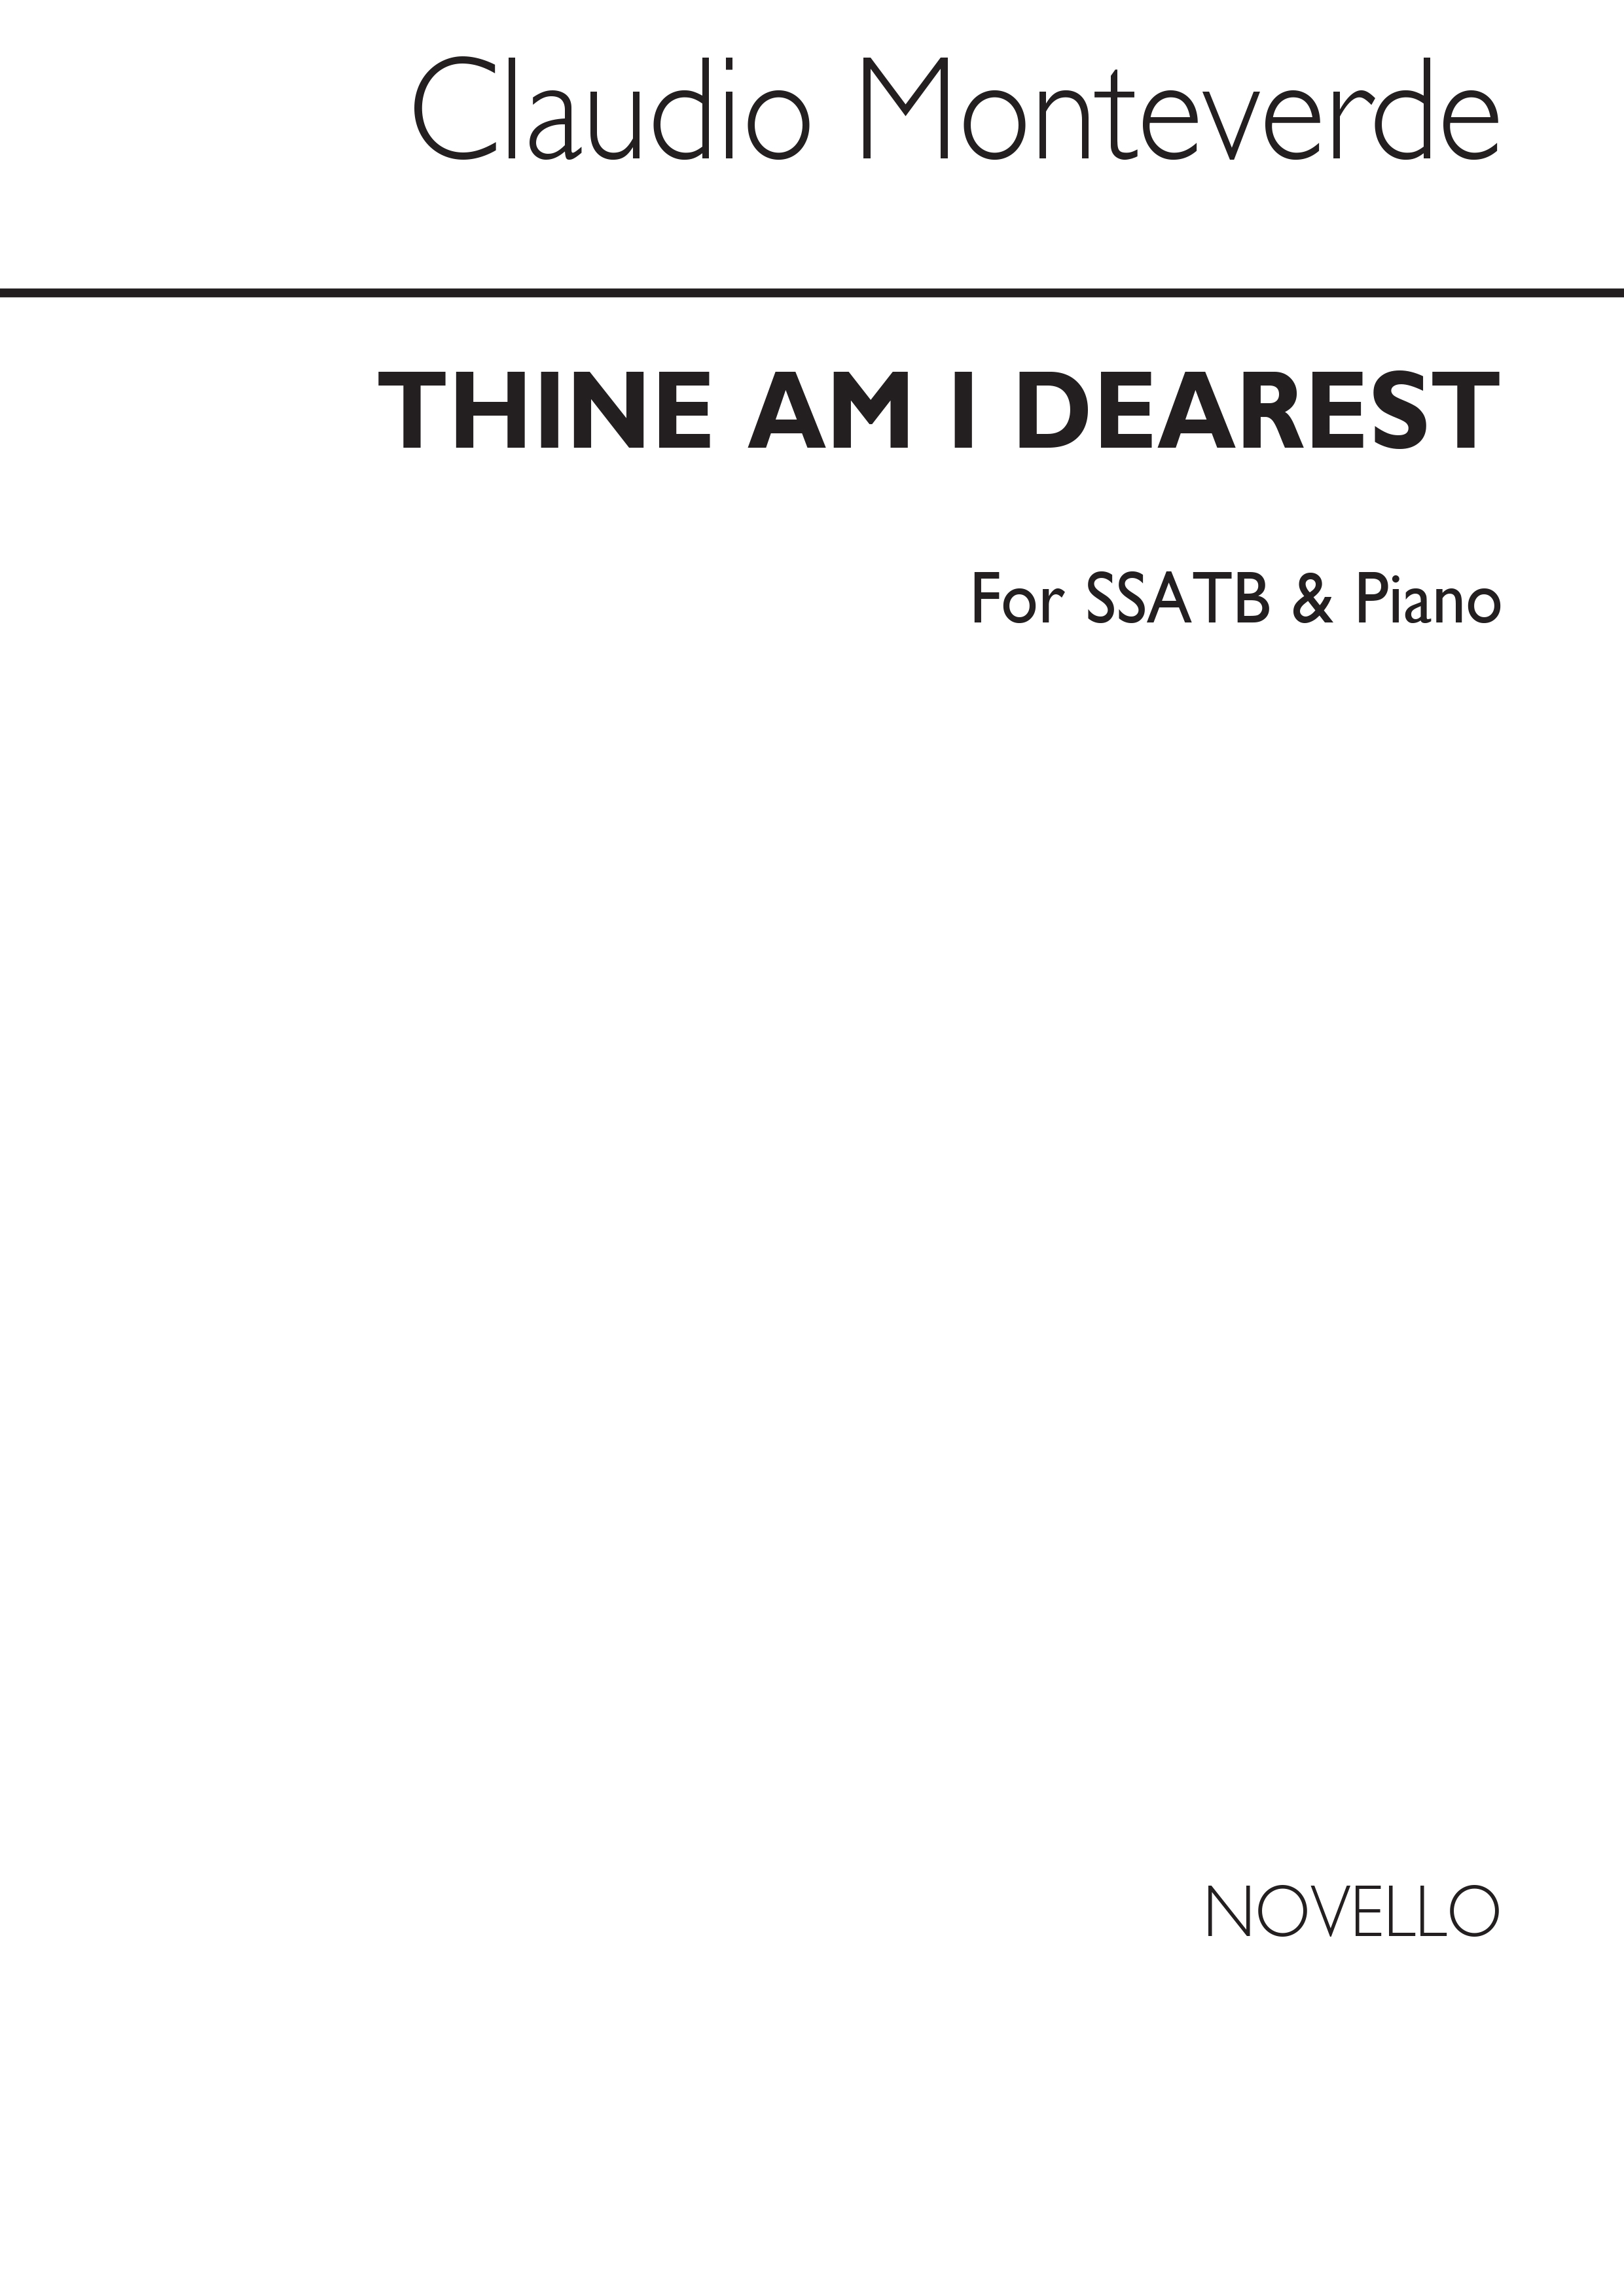 Manteverde Thine Am I, Dearest Ssatb/Piano